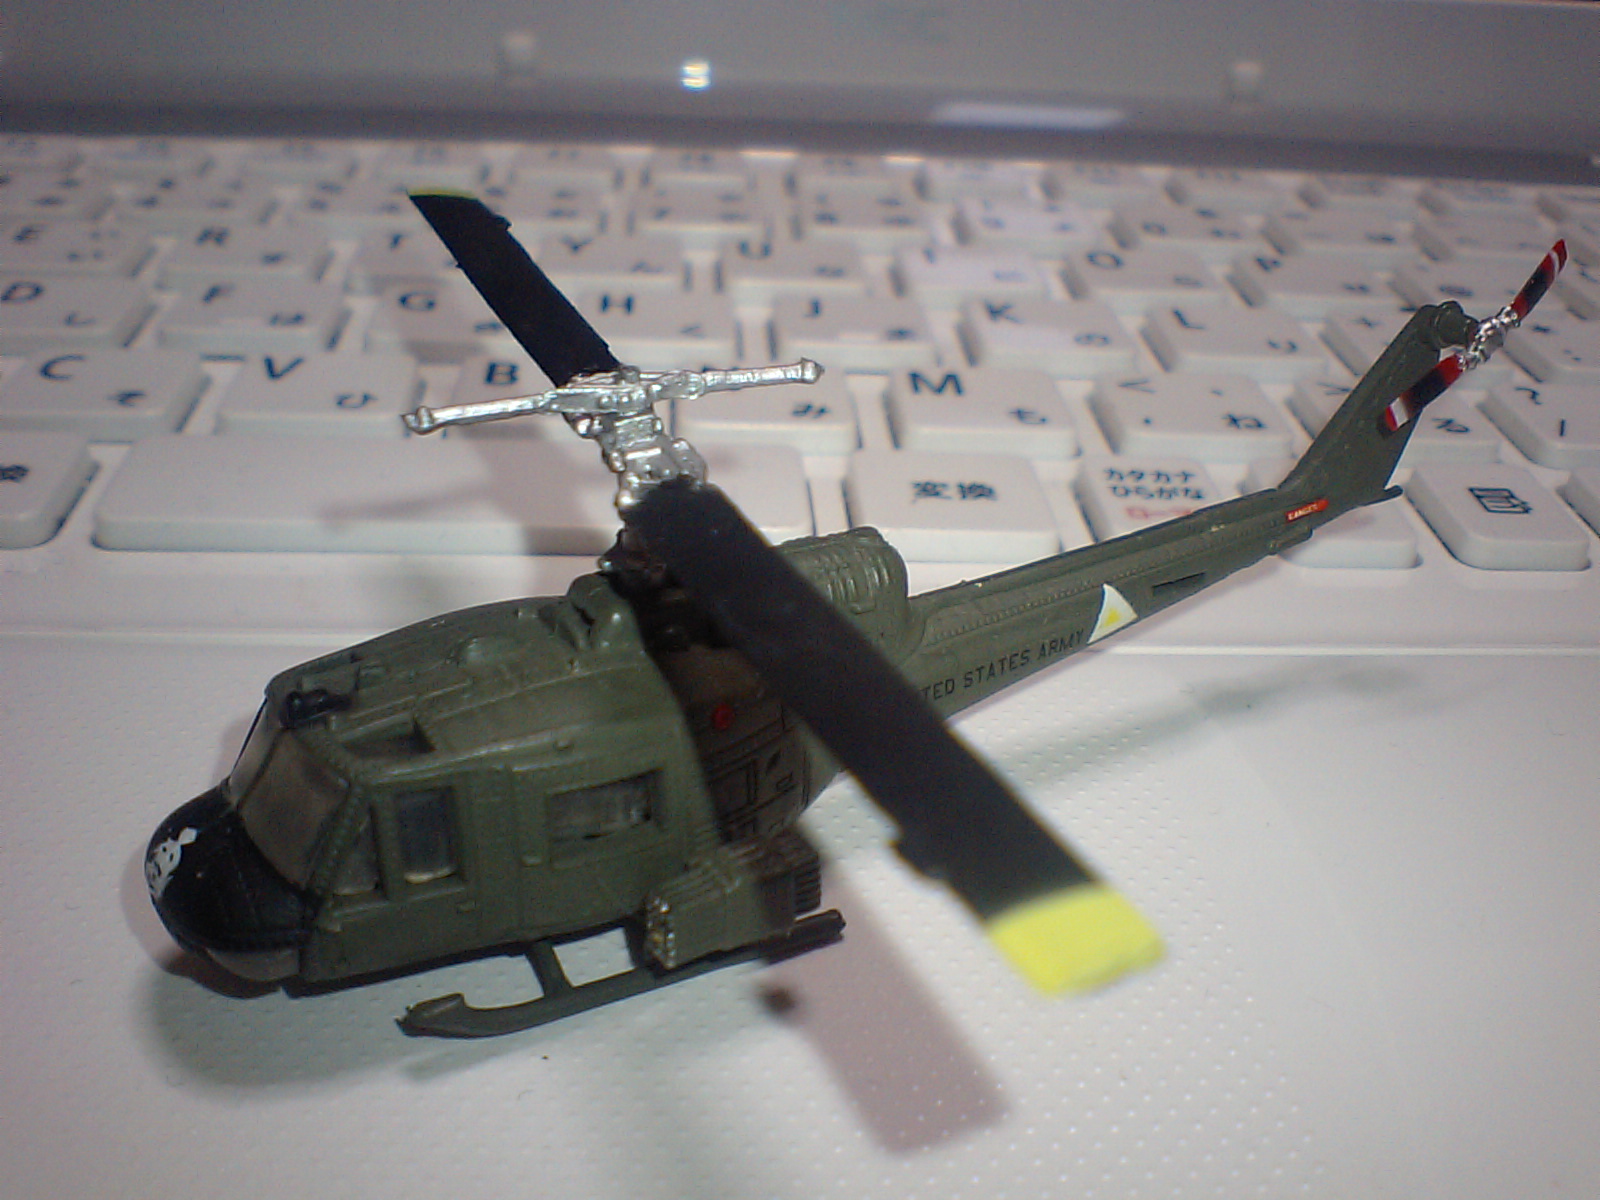 エフトイズ・コンフェクト ヘリボーンコレクション UH-1 イロコイ アメリカ陸軍仕様（オリーブドラブ塗装）1/144:  電脳ガレージCyberbrain garage